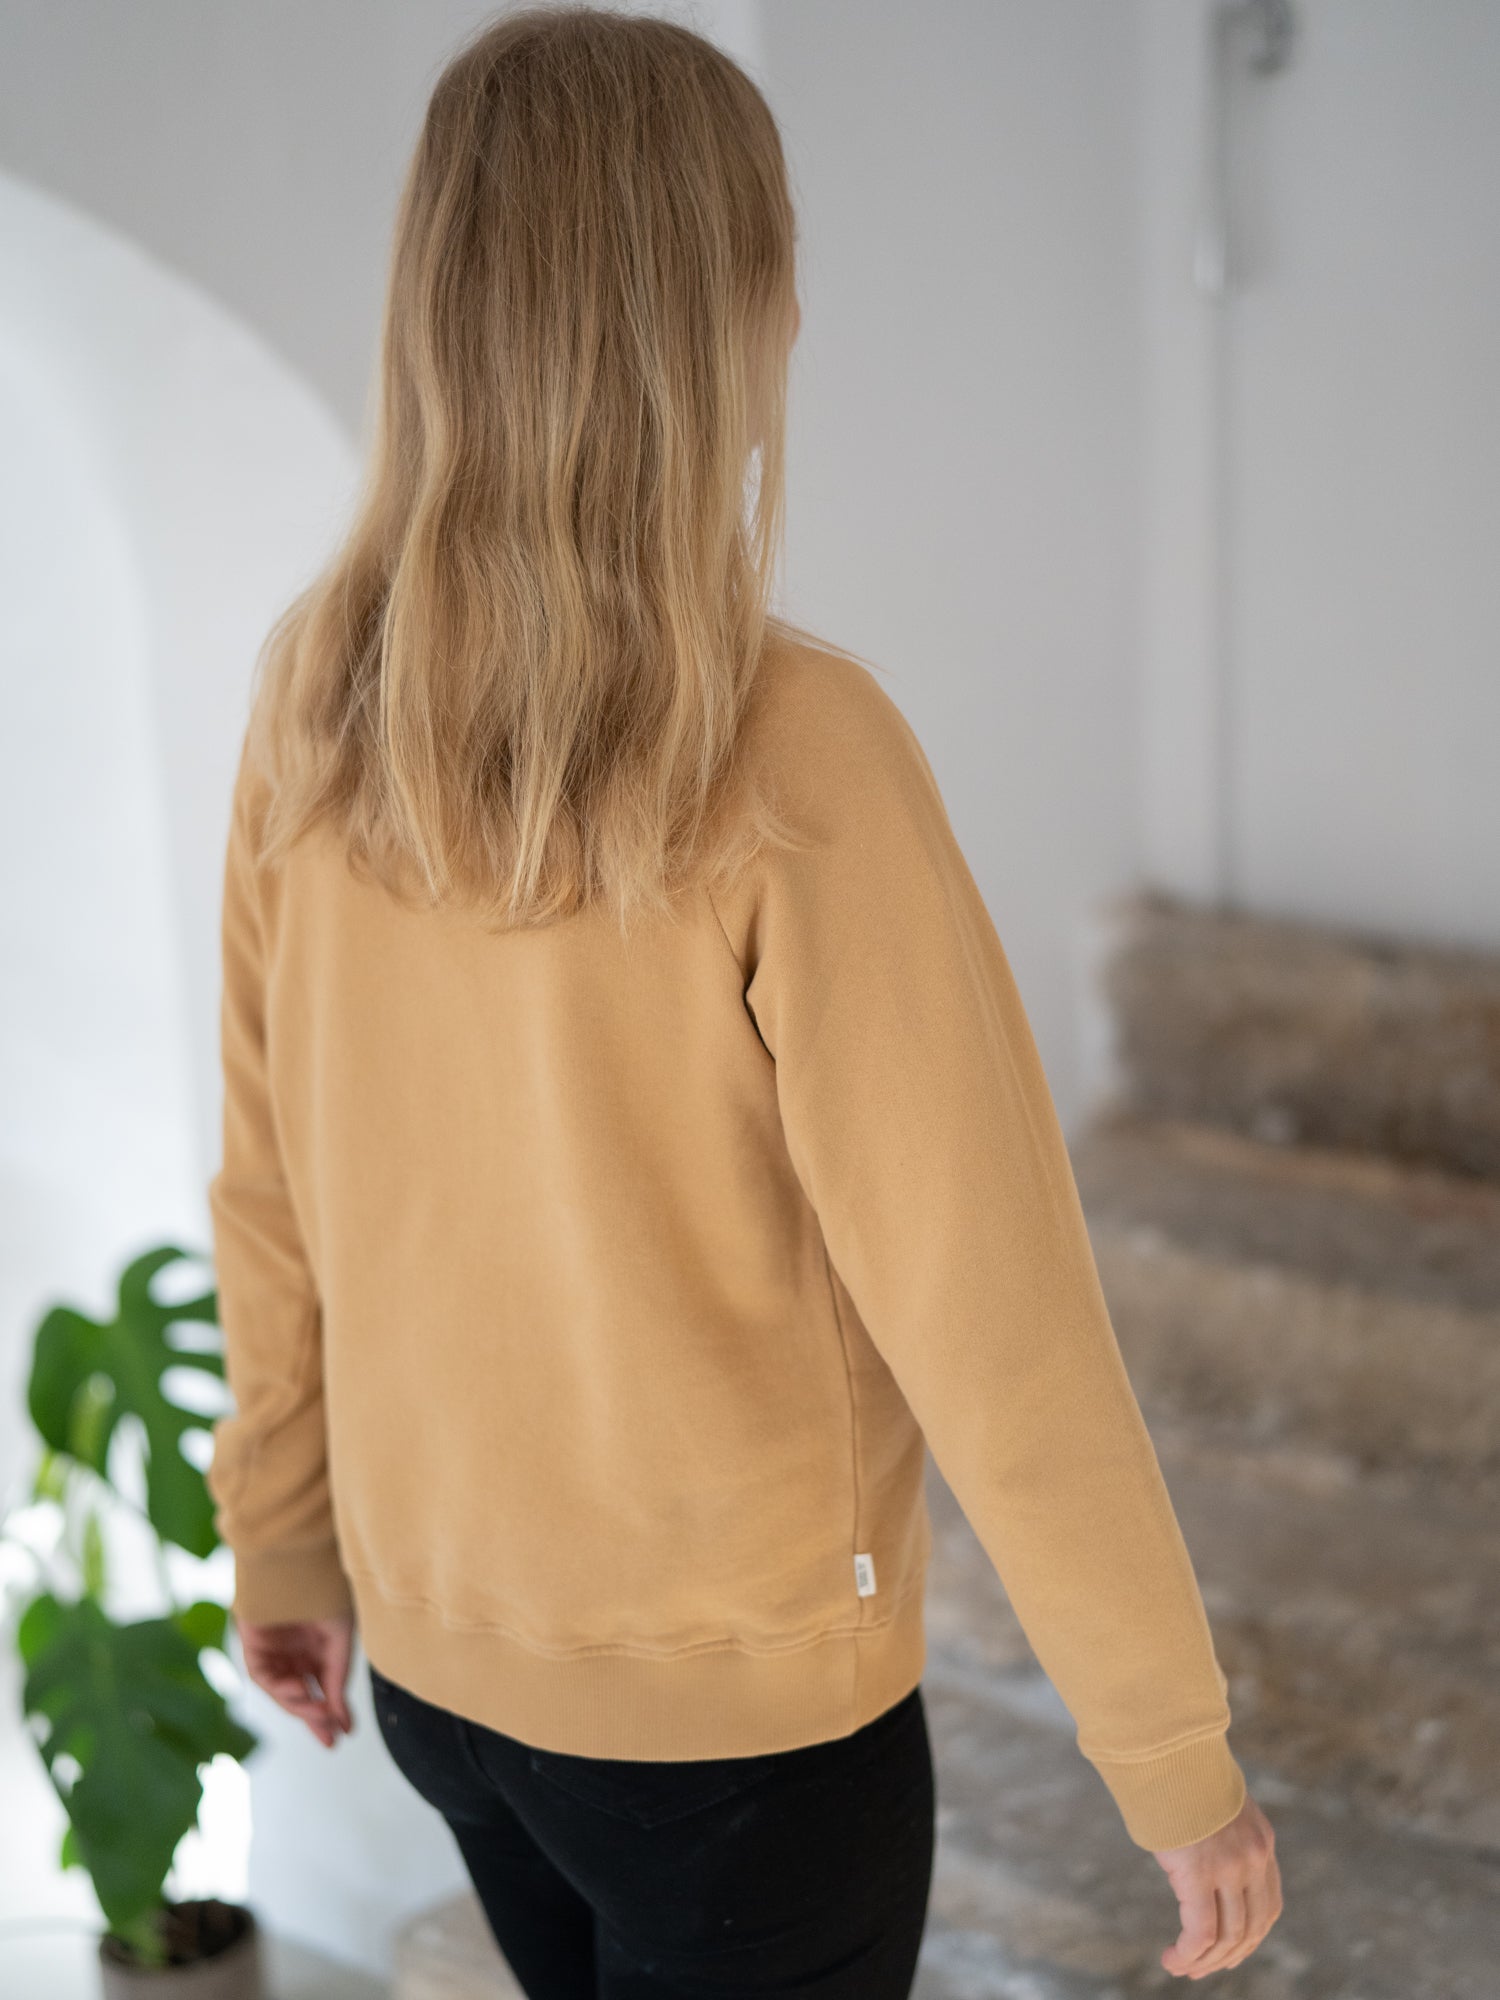 Nachhaltiger Frauen fux Sweater von FUXBAU aus 100% GOTS zertifizierte Biobaumwolle in der Farbe senfgelb.